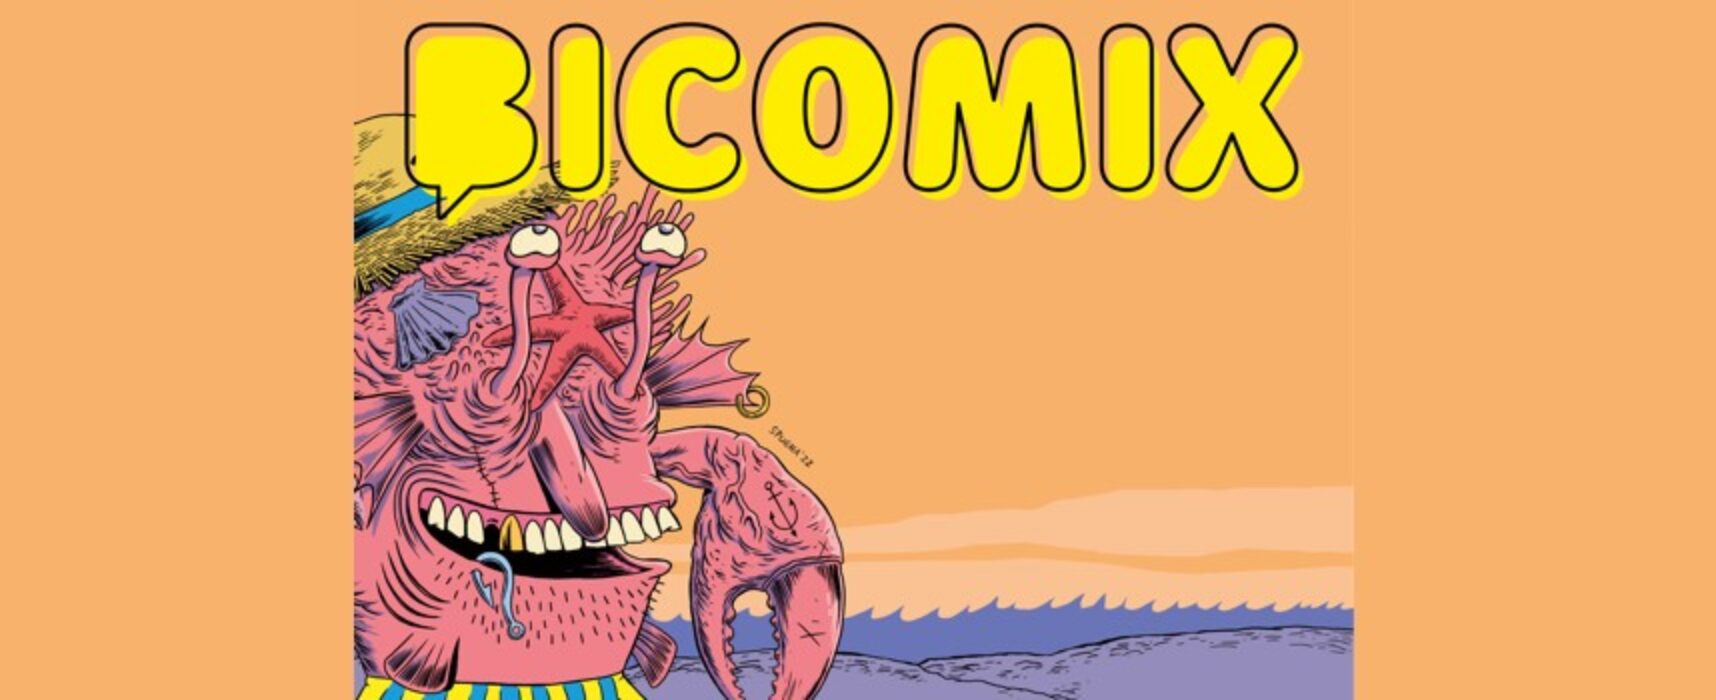 Bicomix 2022: torna la rassegna dedicata al fumetto con talk, cosplay e spettacoli